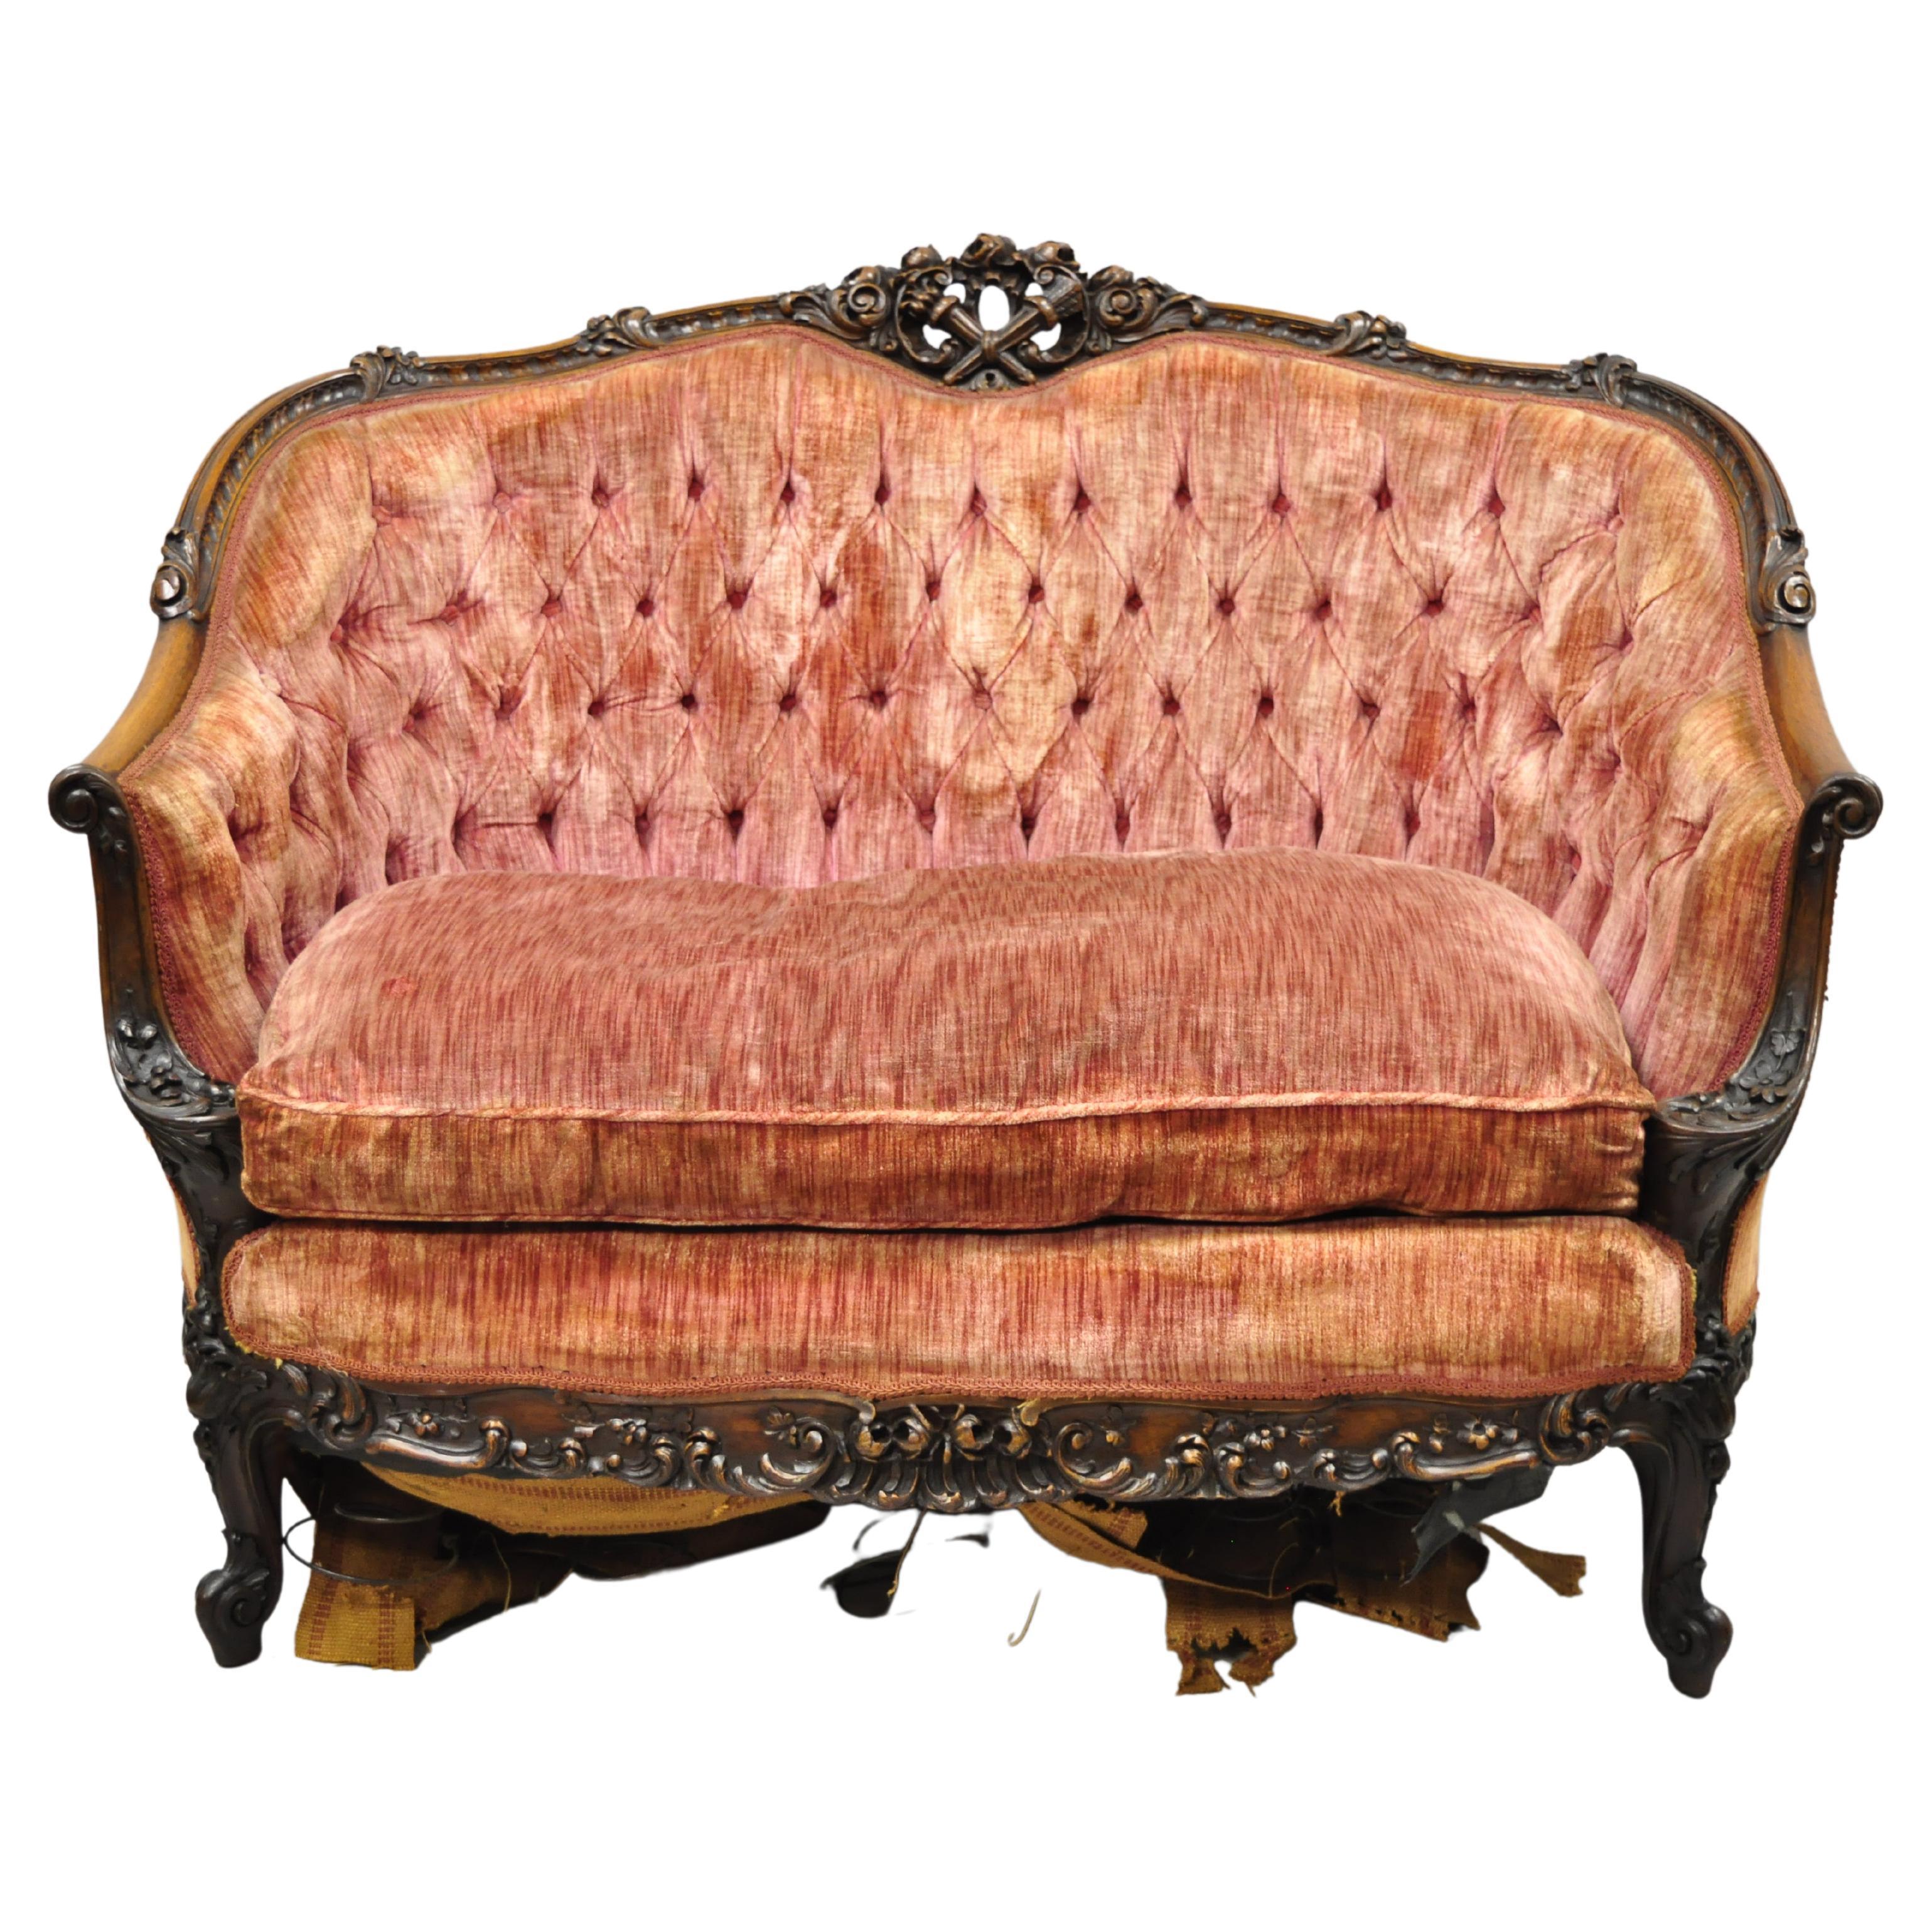 Ancien canapé de style rococo français Louis XV orné d'acajou sculpté